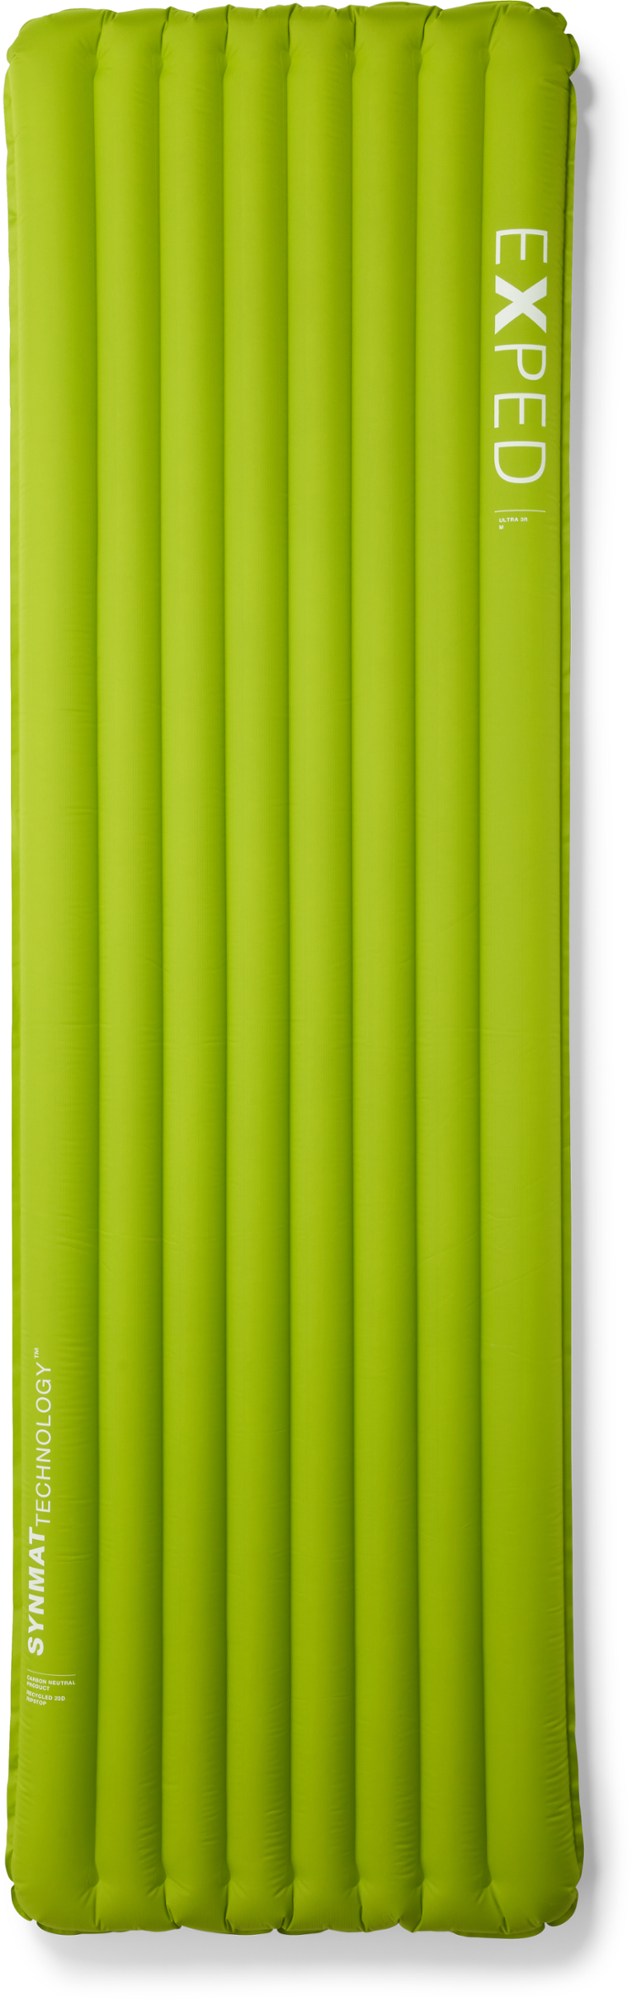 Спальный коврик Ультра 3R Exped, зеленый фотографии